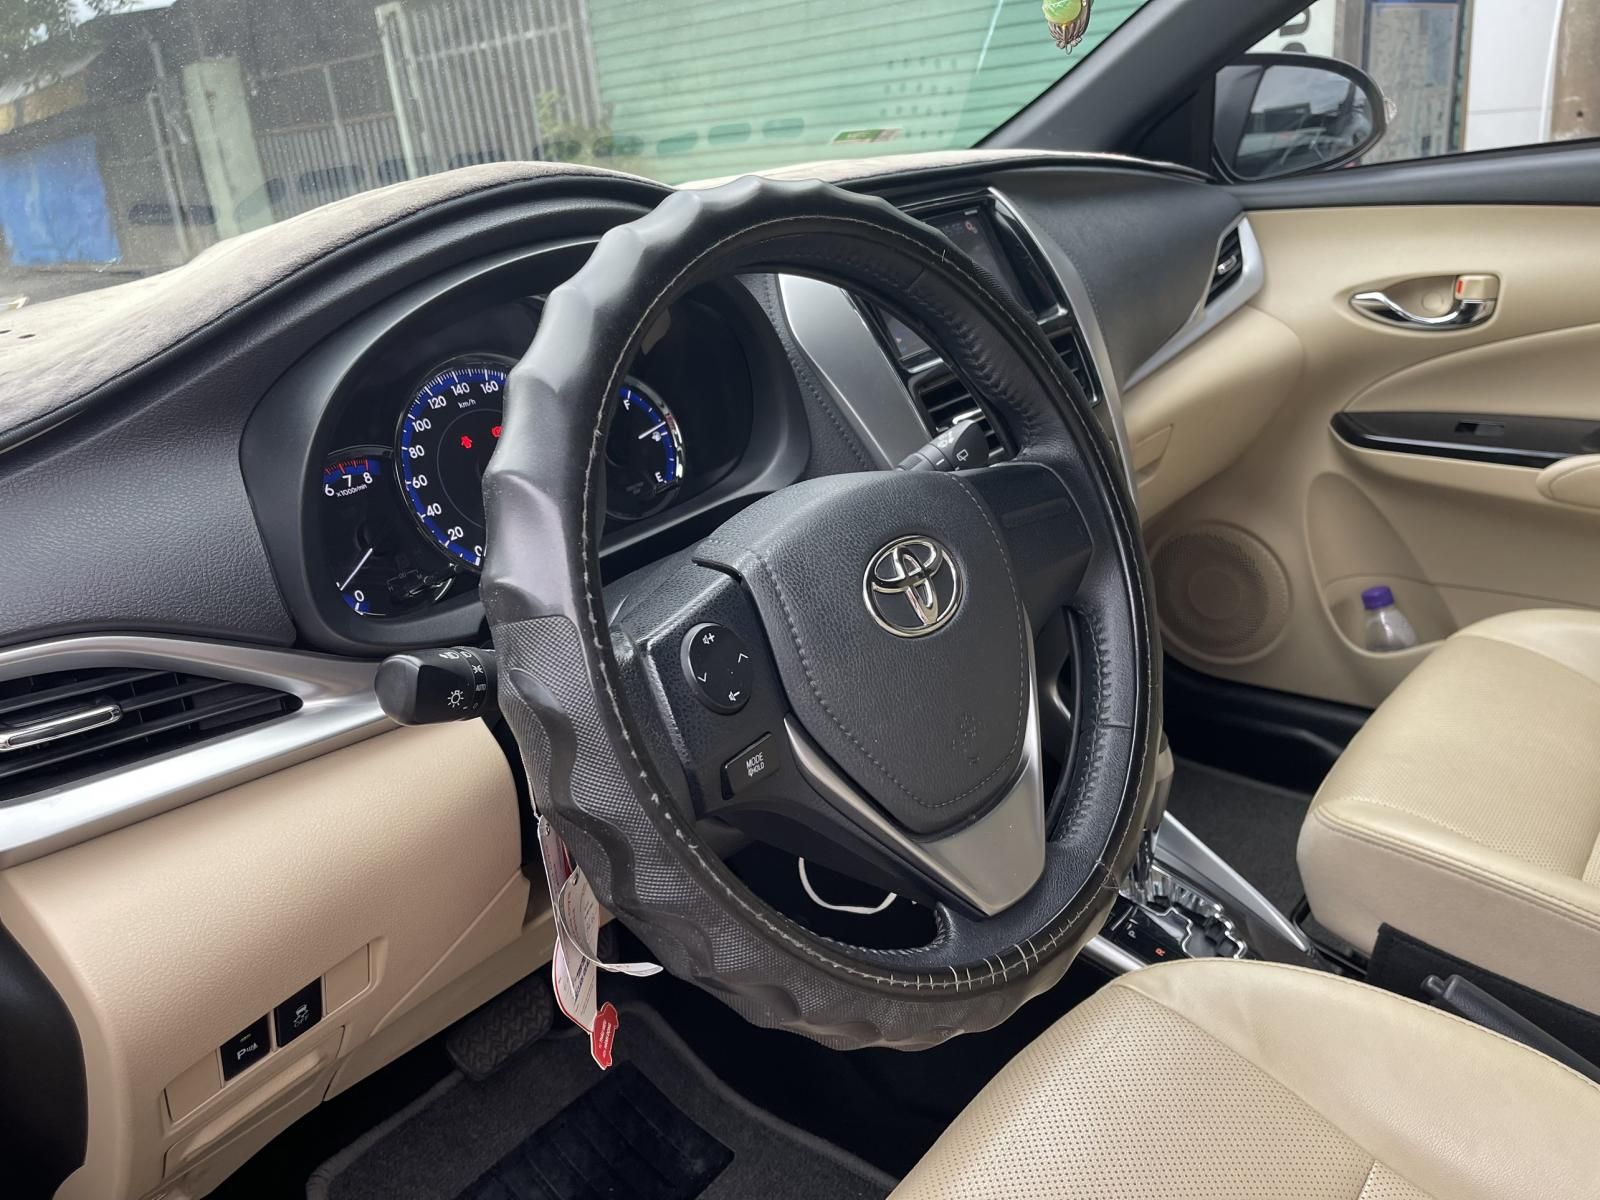 Cần bán xe Toyota Yaris 1.5G năm sản xuất 2018, giá 570tr